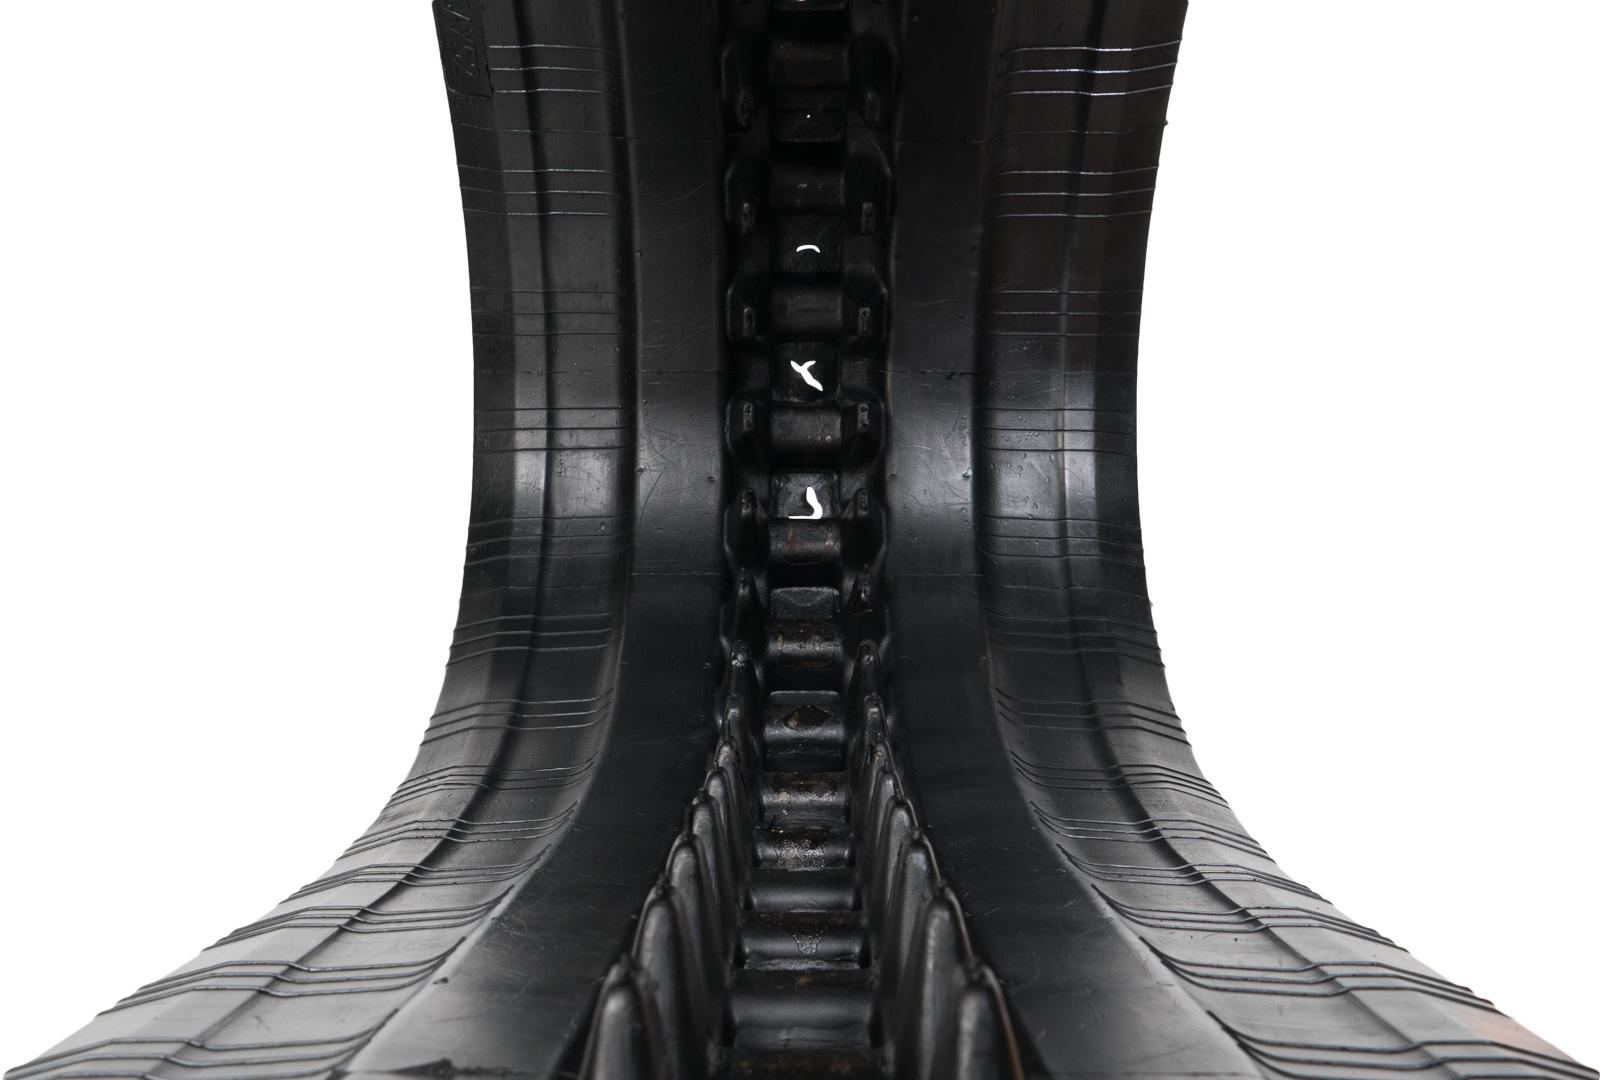 set of 2 18" heavy duty c pattern rubber track (450x86bx52)